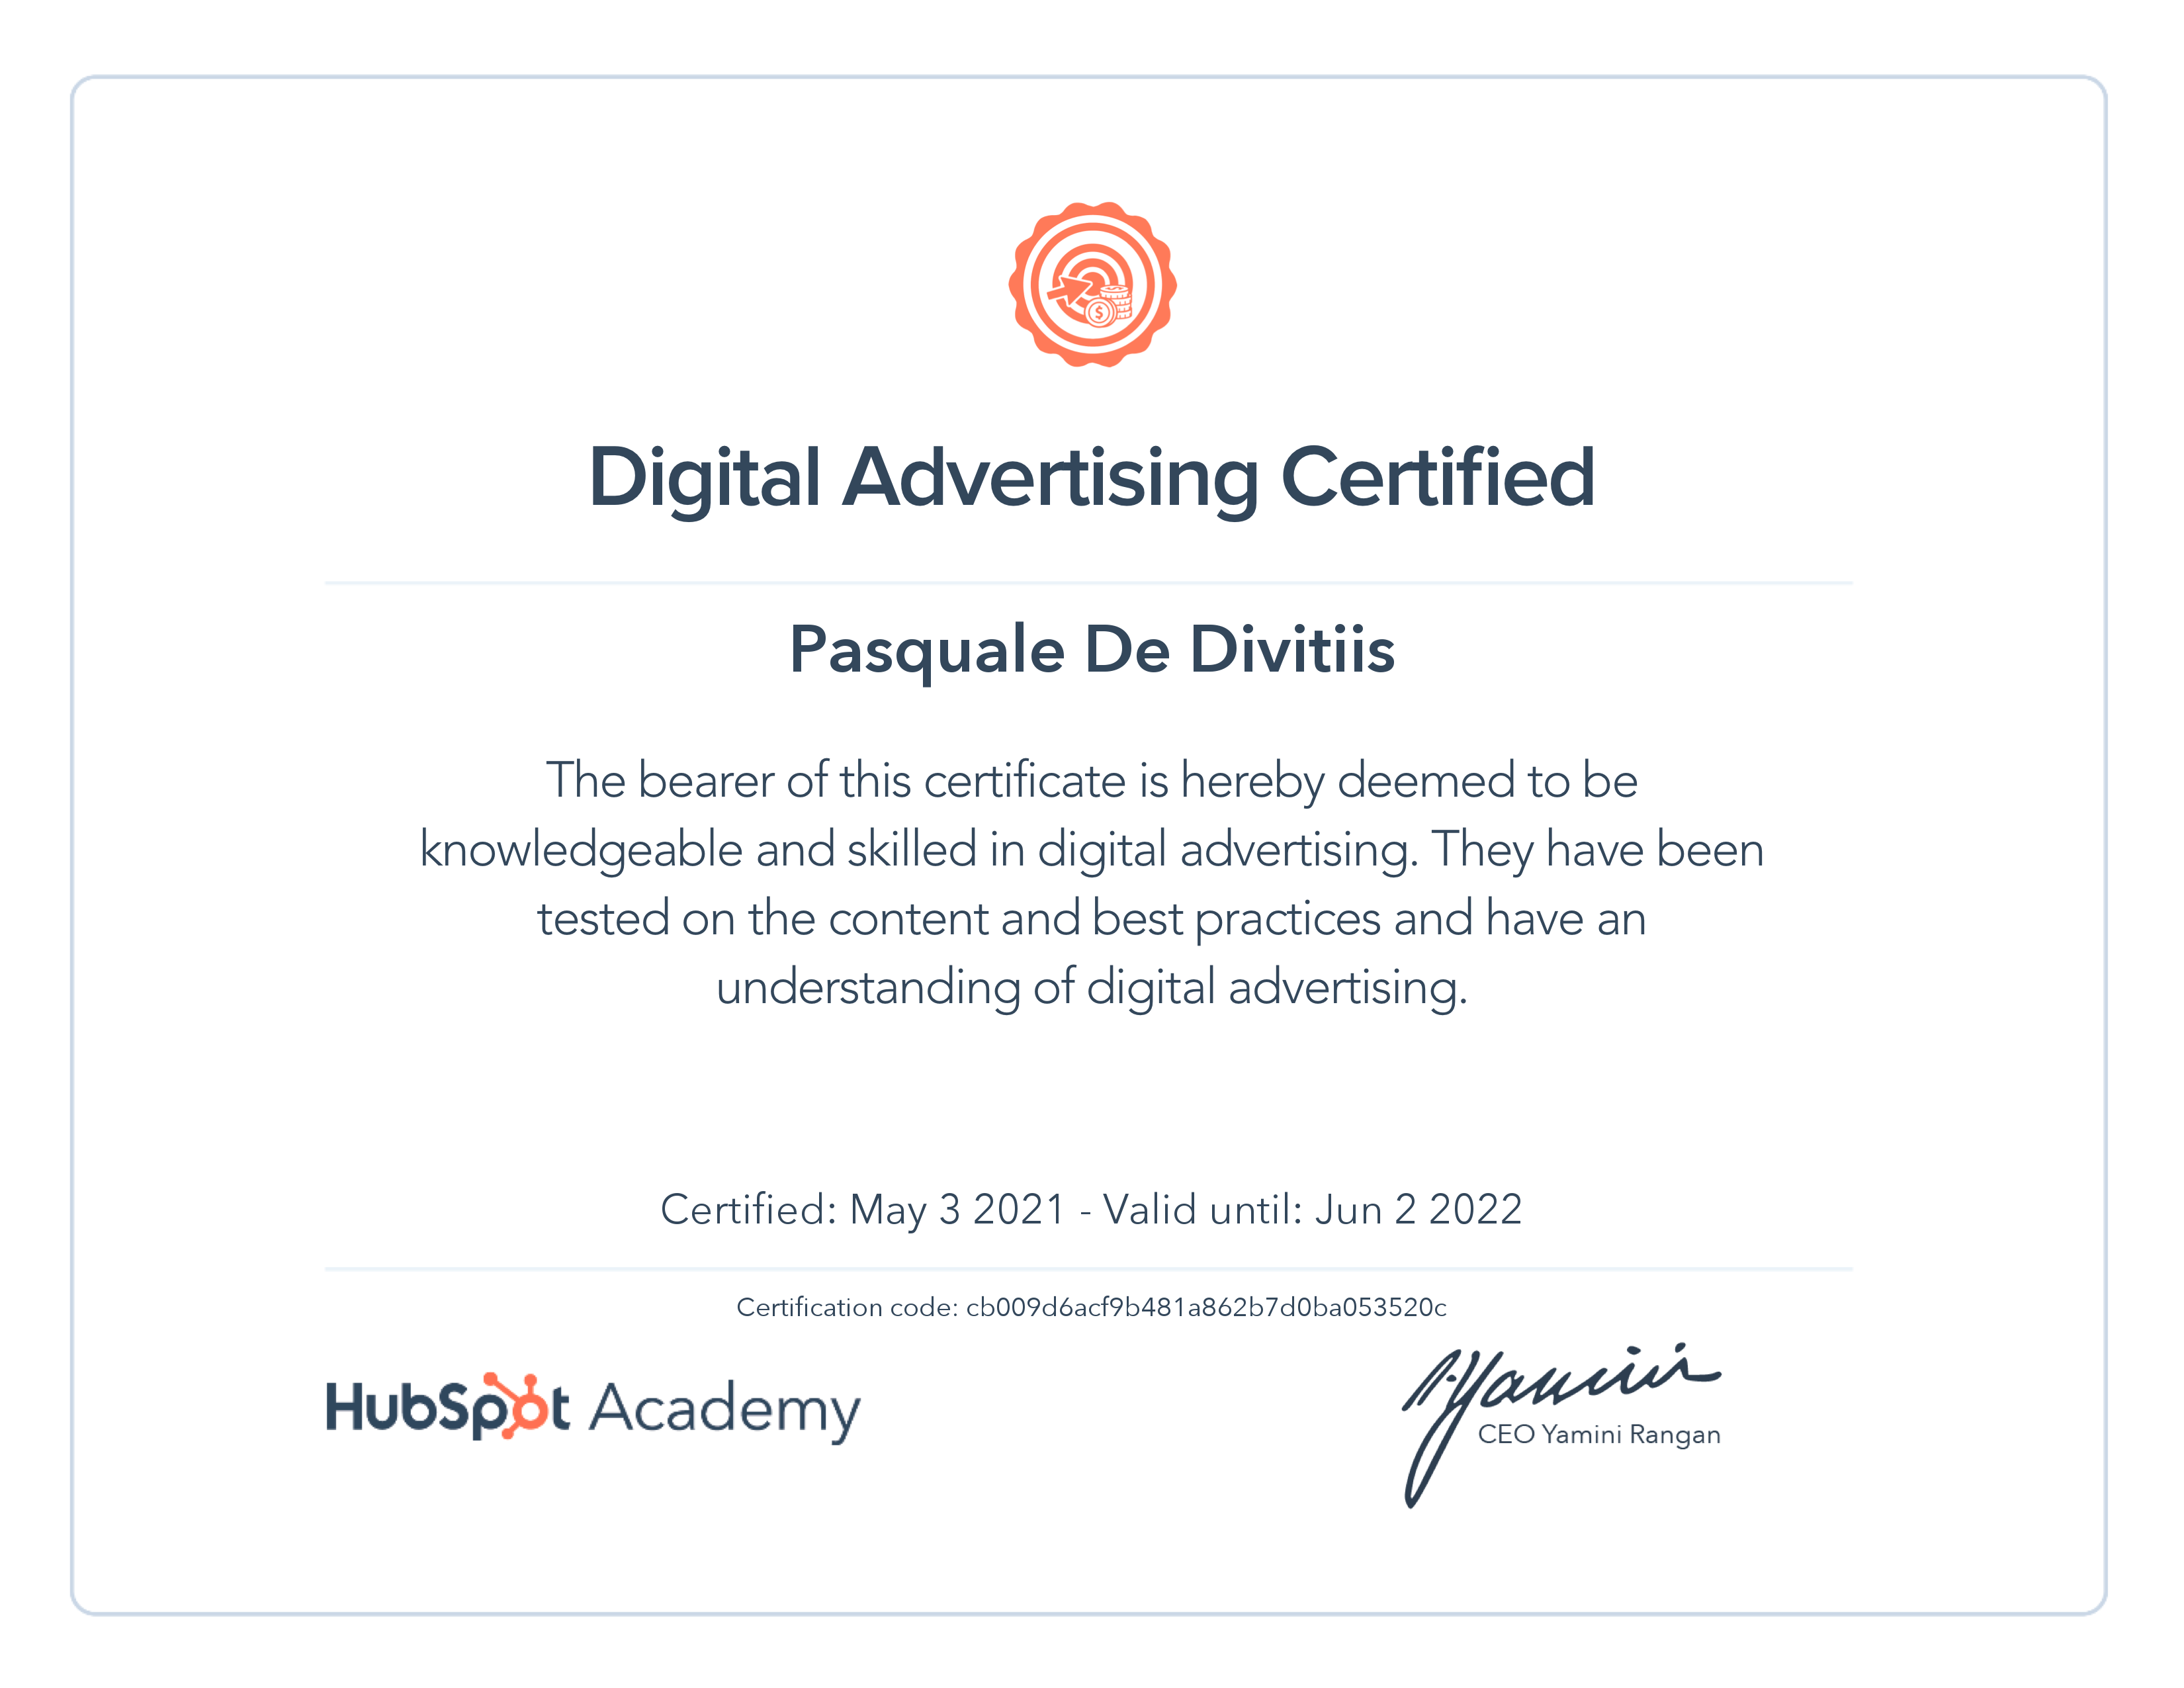 HubSpot Academy / Digital Advertising Certification 